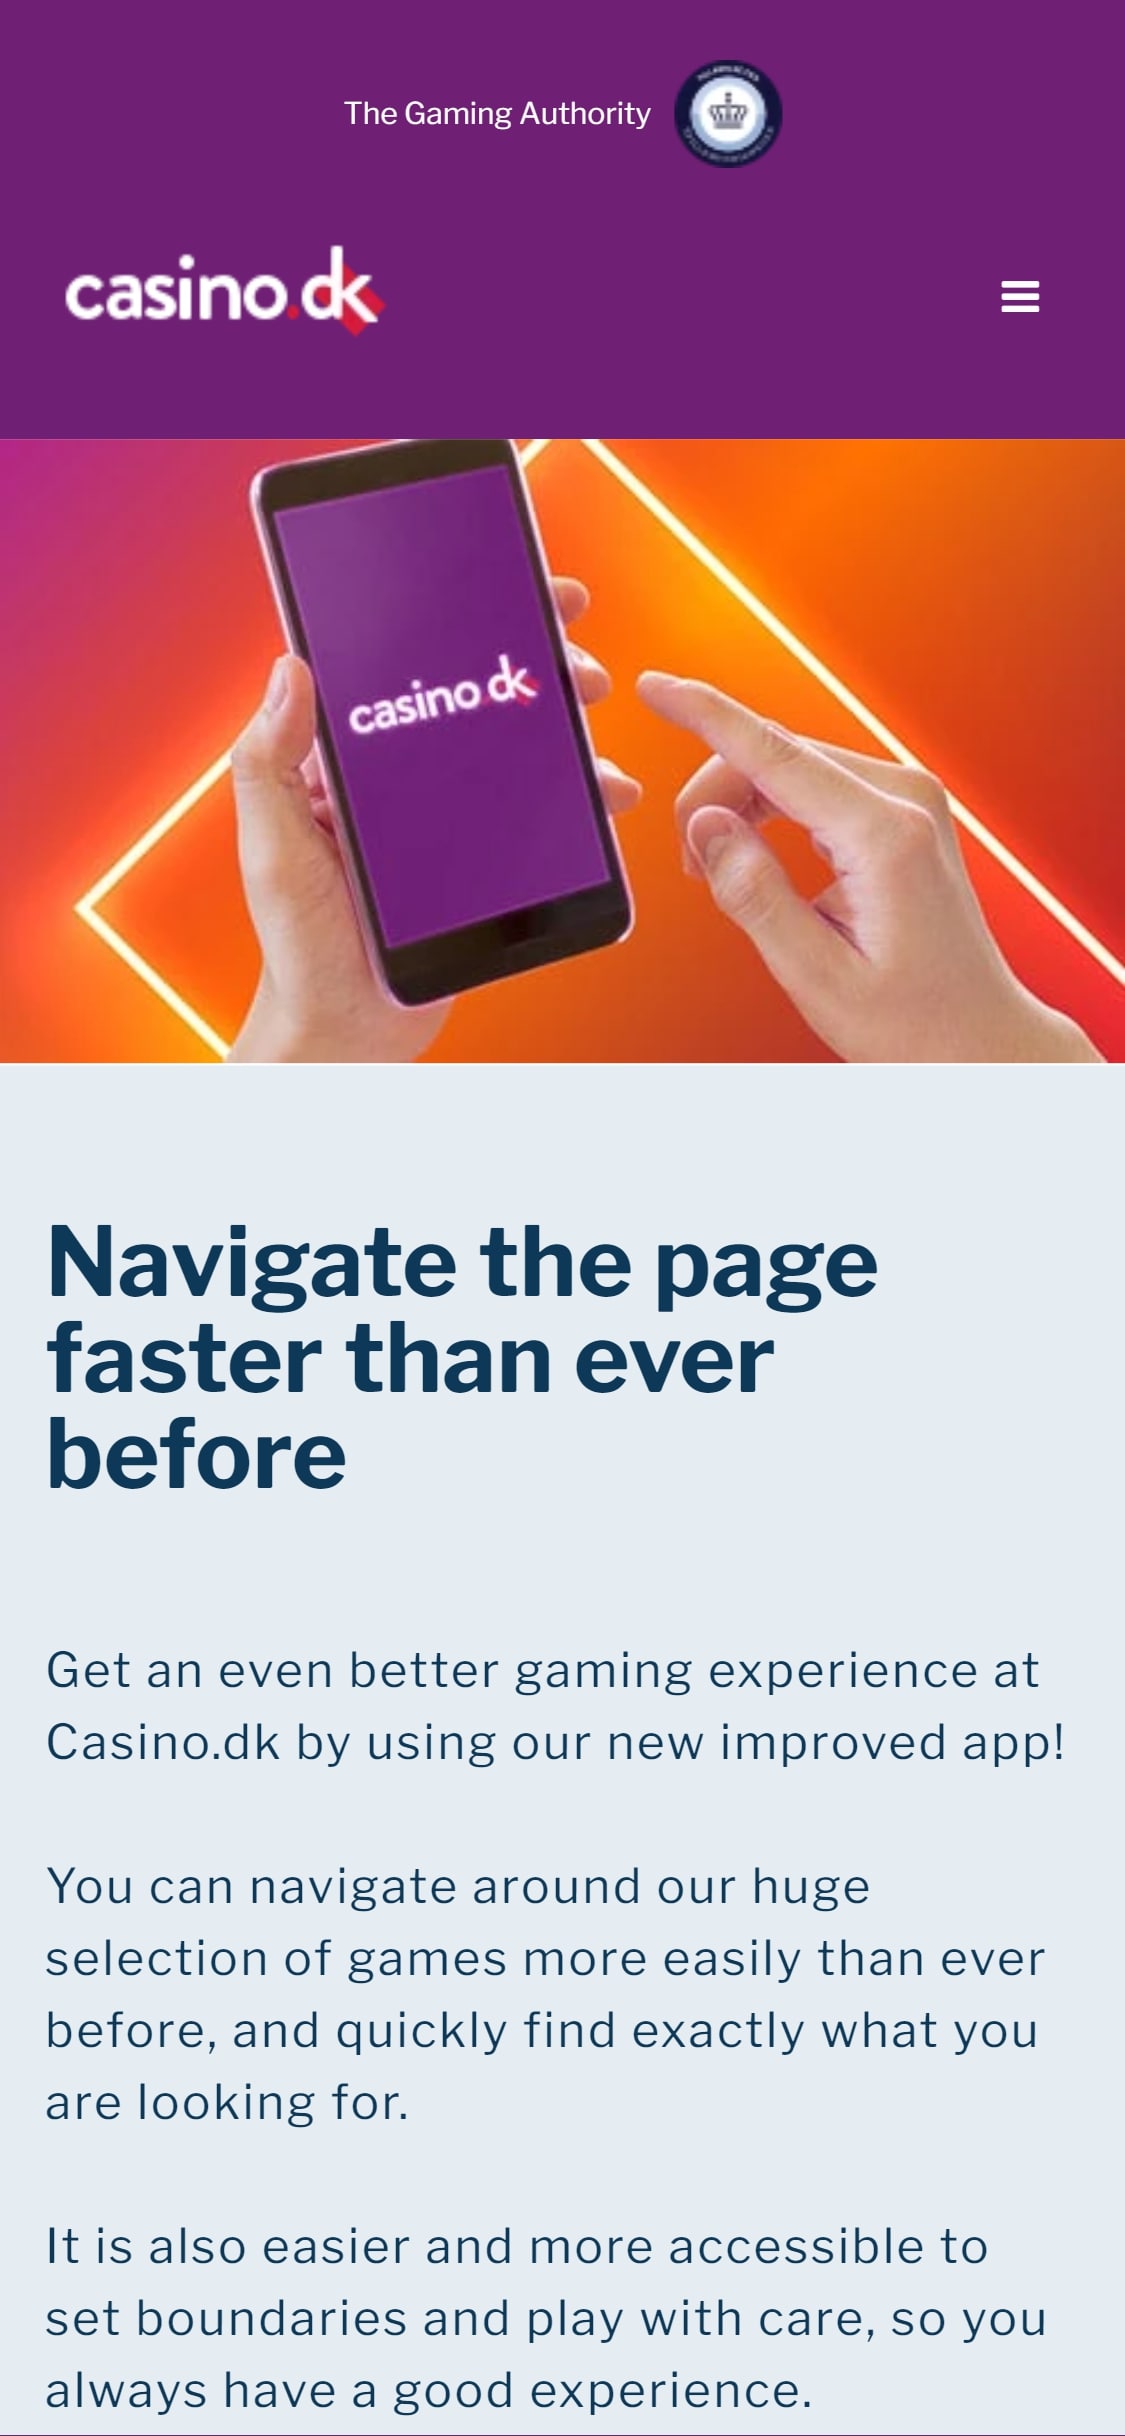 Casino DK Mobile App Review